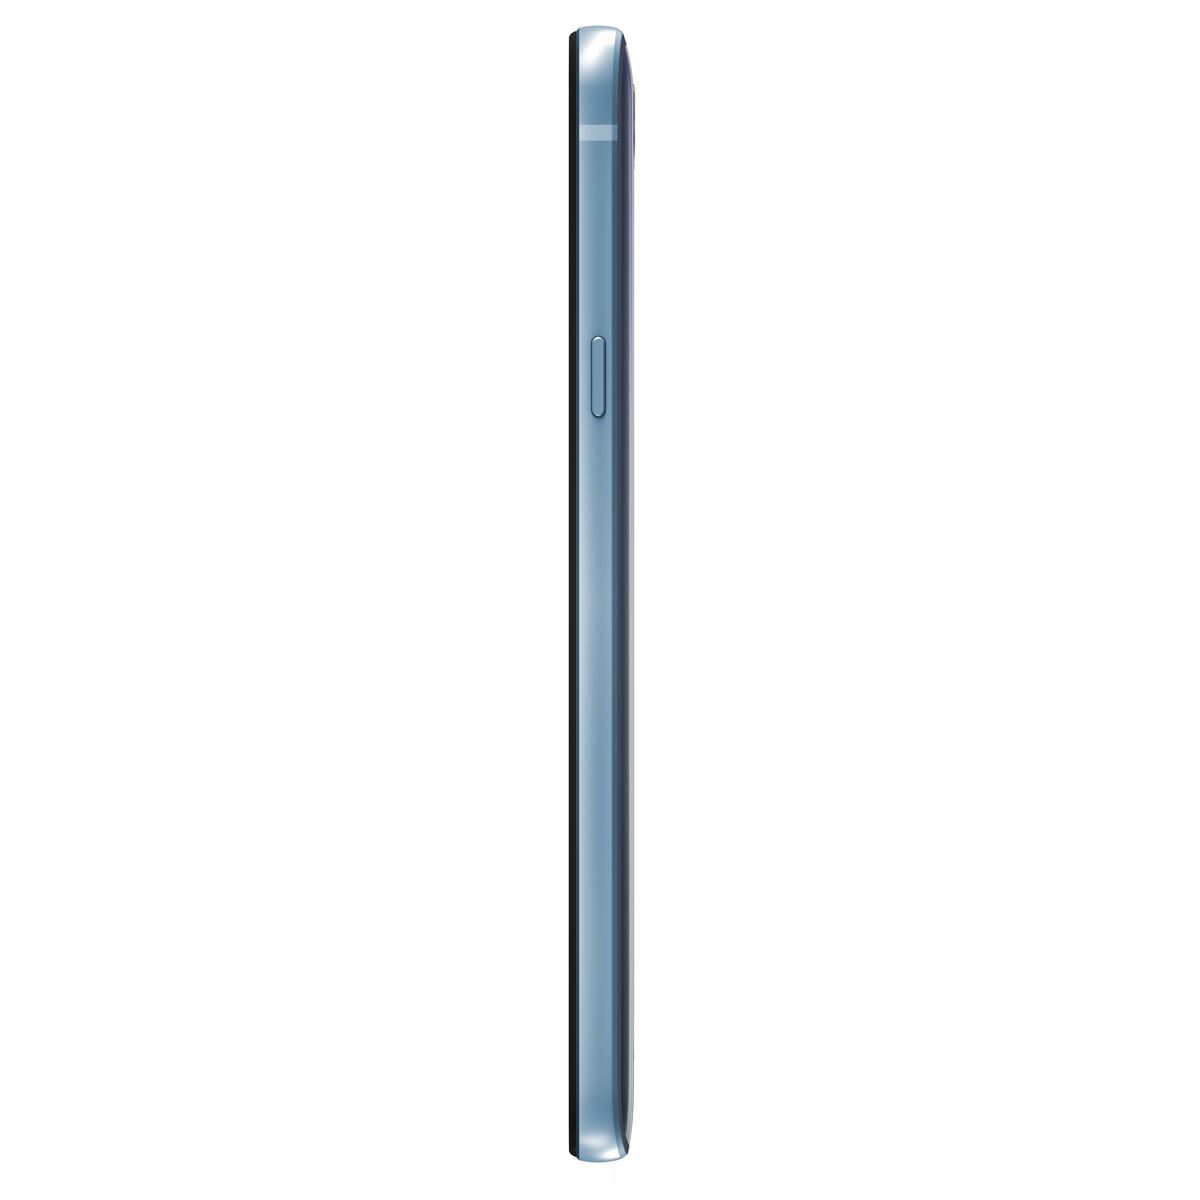 Celular LG M700H Q6 Alpha Azul R9 &#40;Telcel&#41;